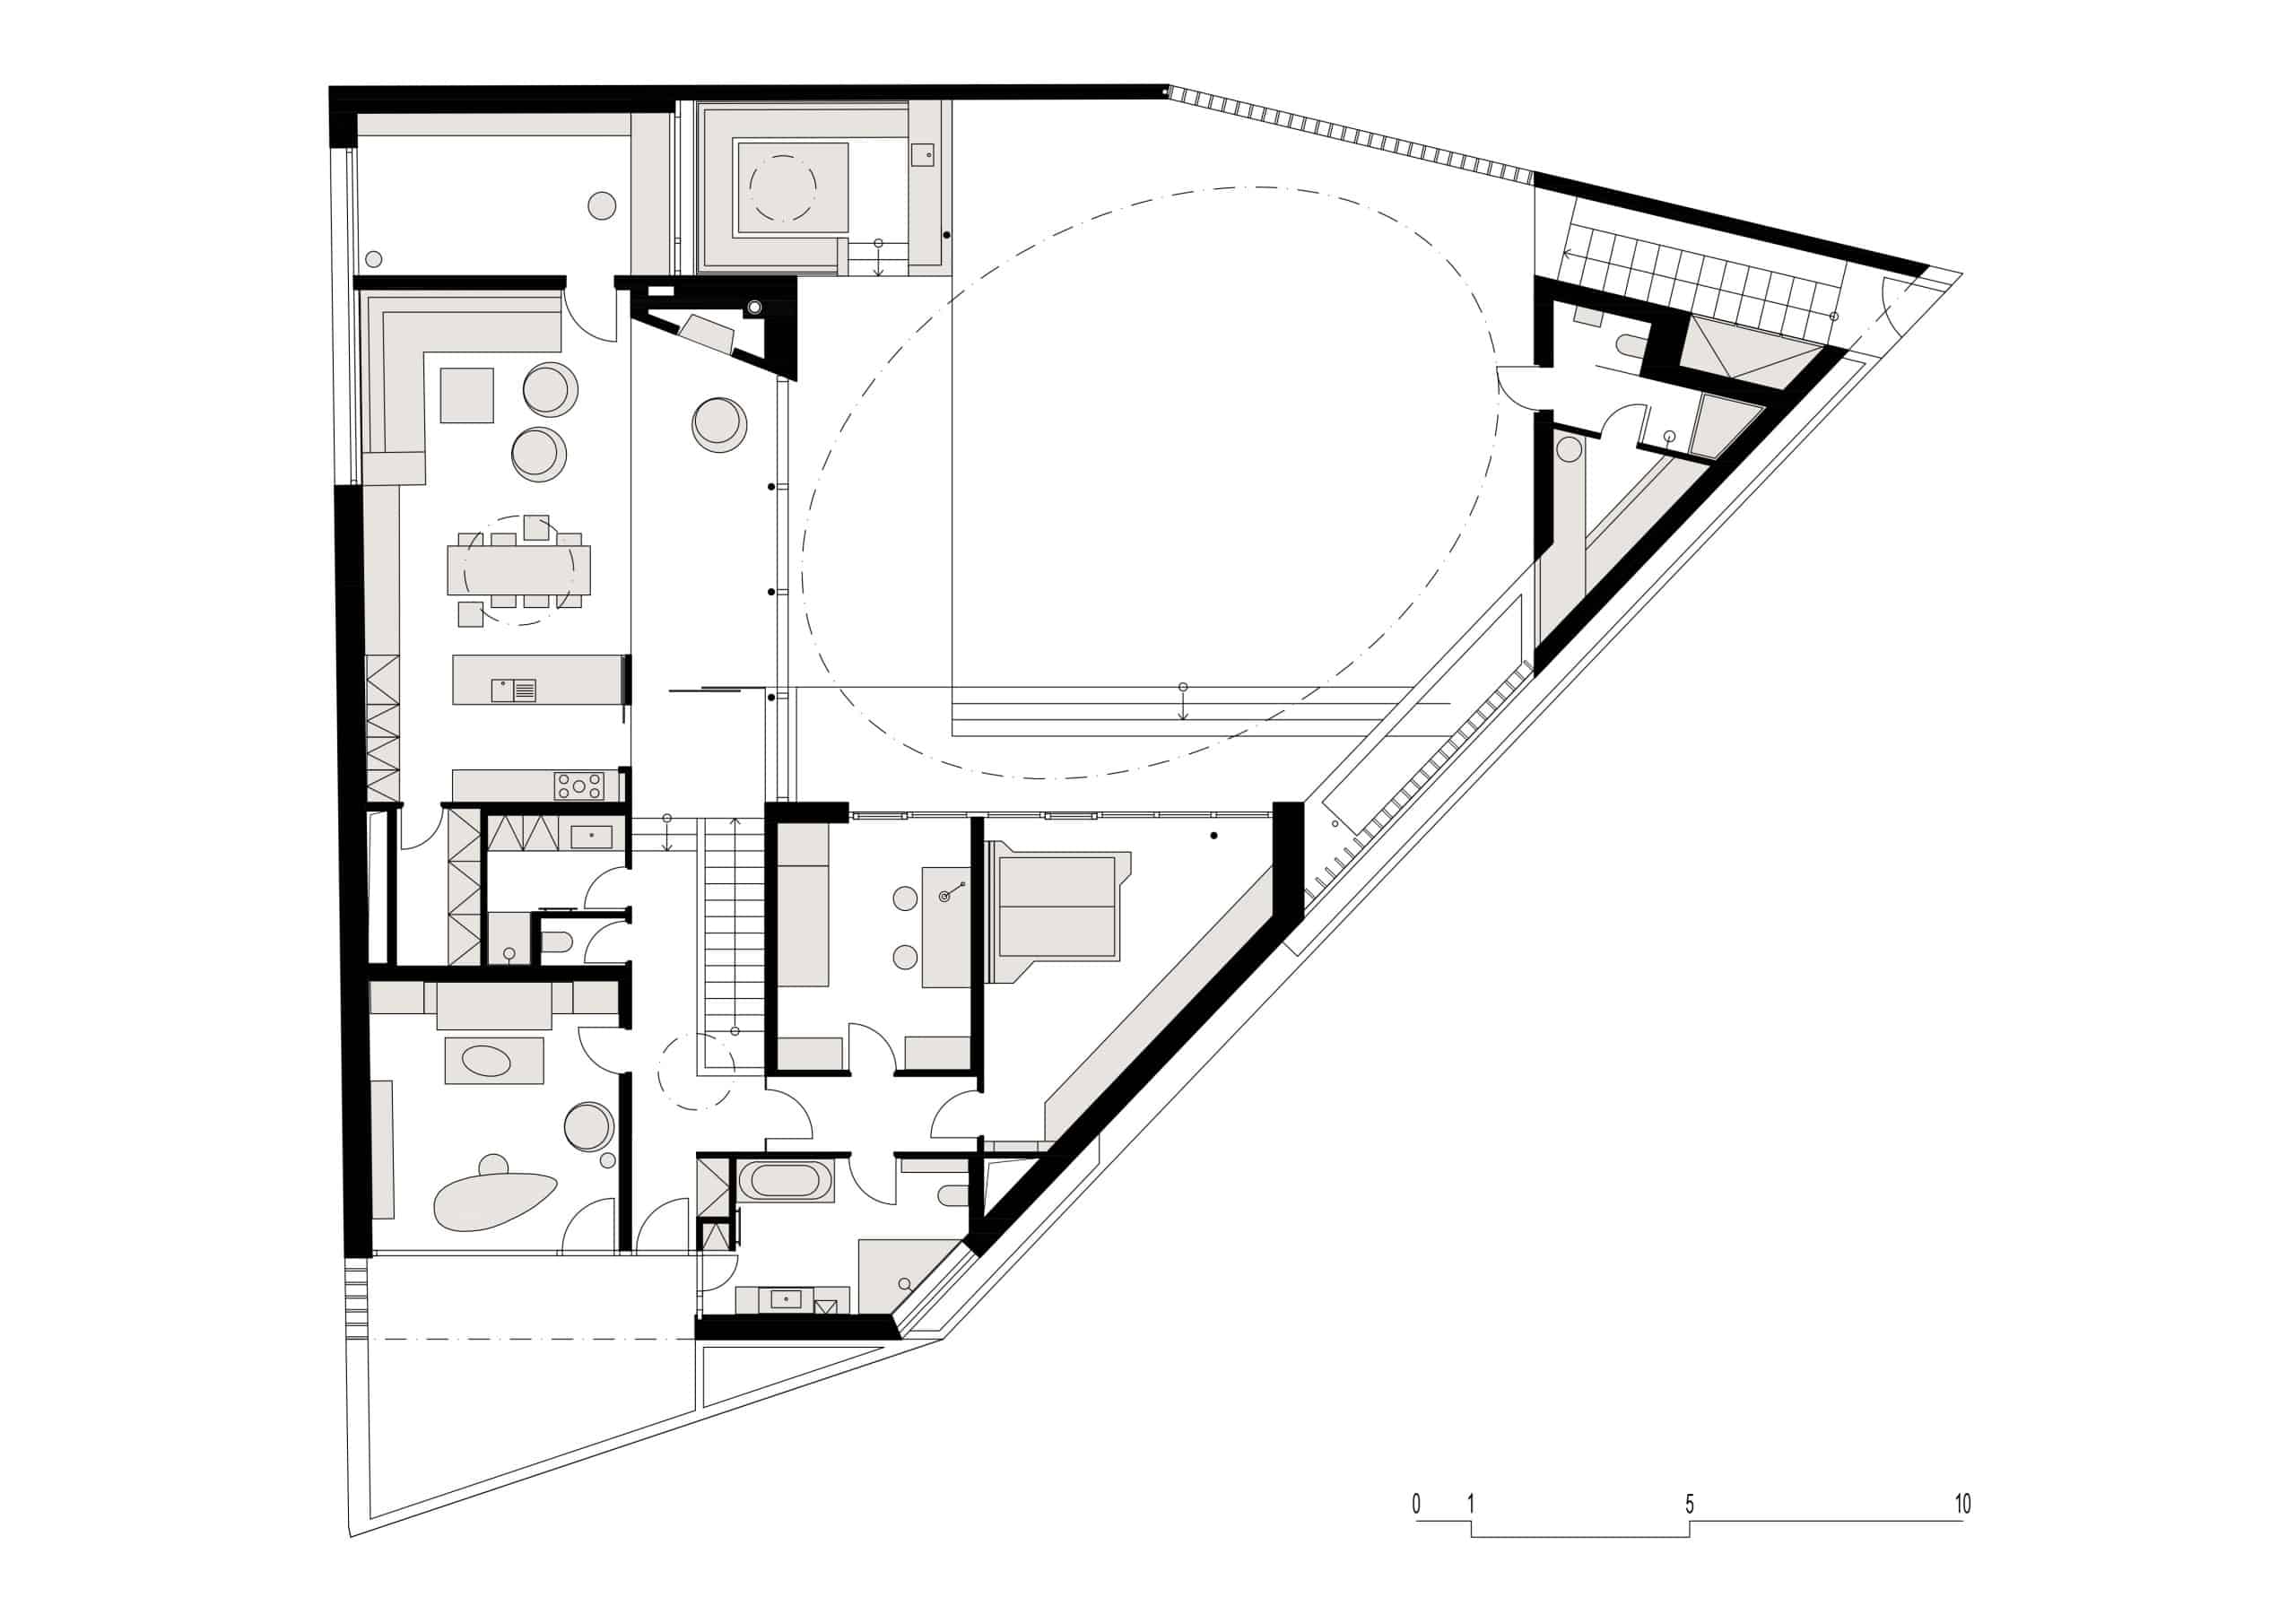 Grundriss vom Erdgeschoss der Villa, schwarz-weiß